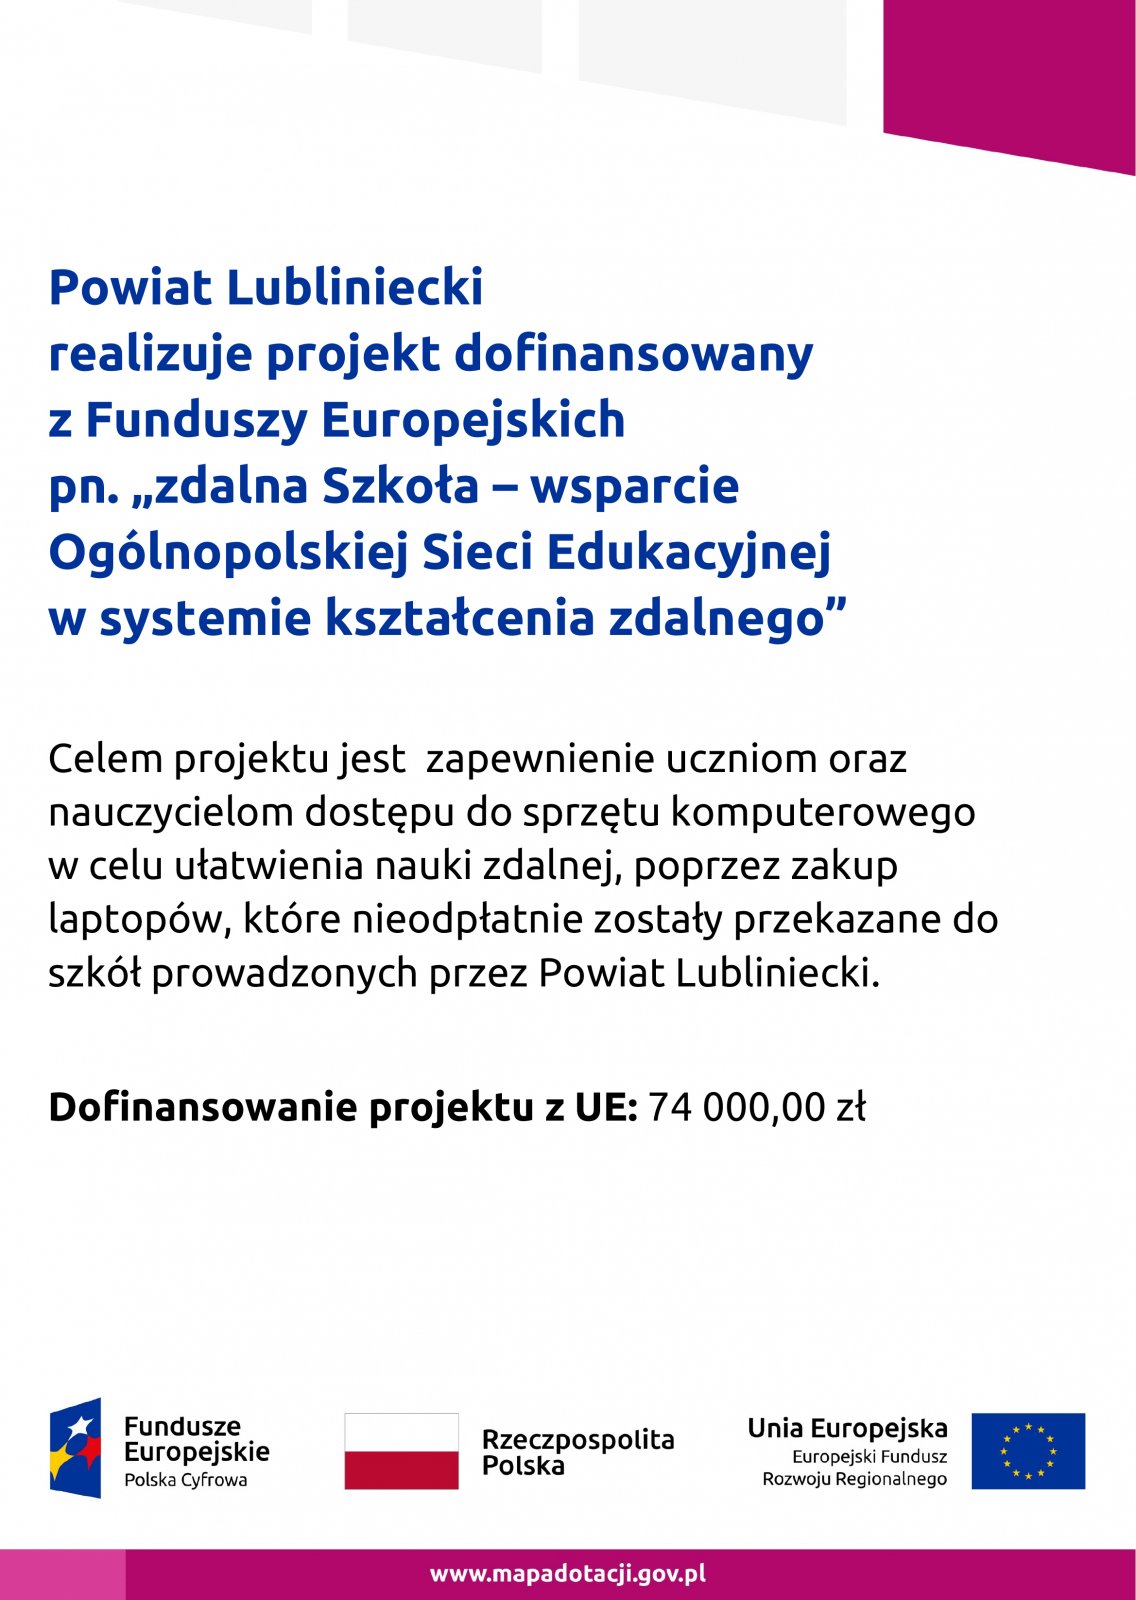 Powiat Lubliniecki realizuje projekt dofinansowany z Funduszy Europejskich pn. „zdalna Szkoła – wsparcie Ogólnopolskiej Sieci Edukacyjnej w systemie kształcenia zdalnego”